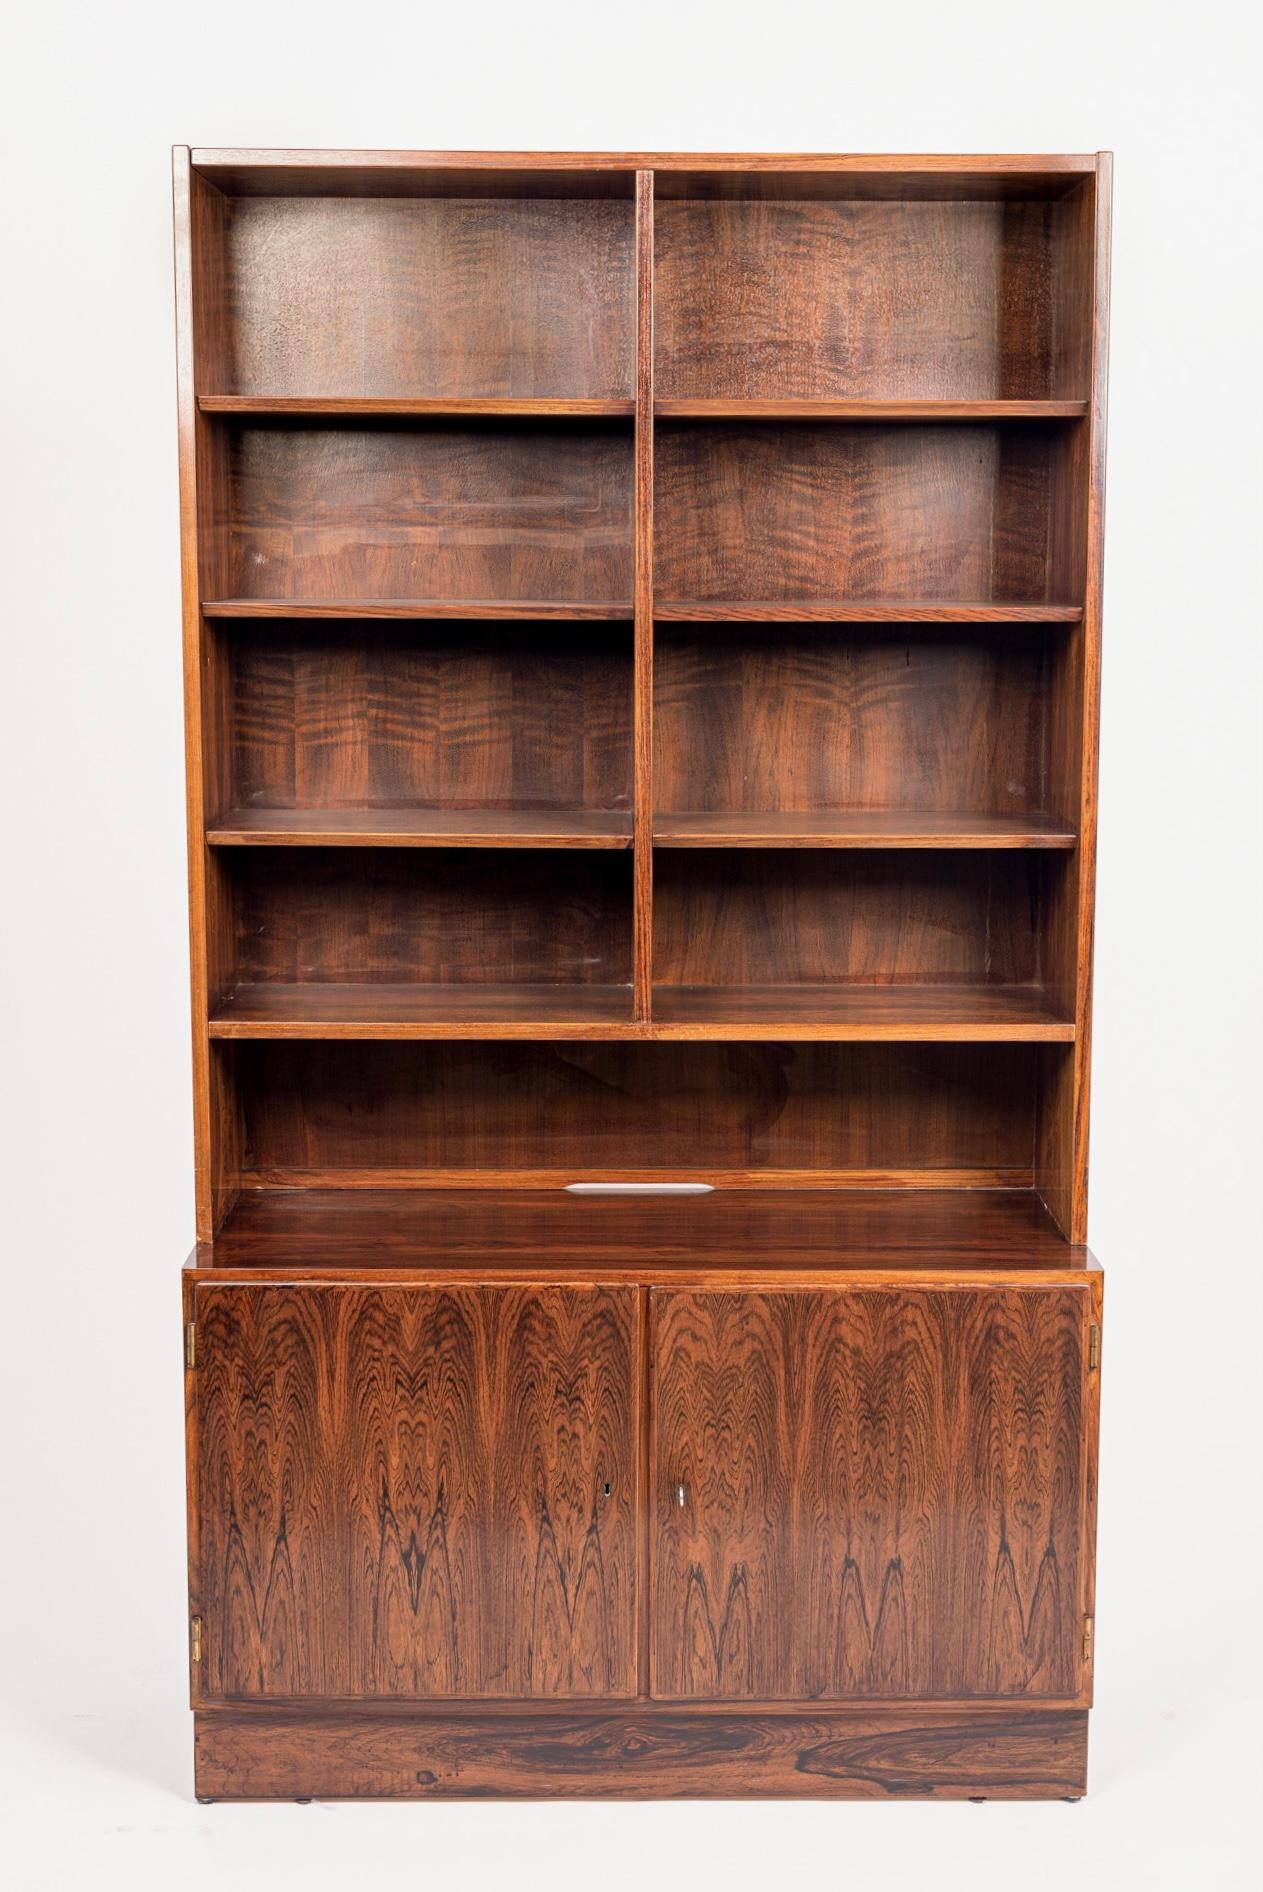 Dieses zweiteilige Bücherregal aus Palisanderholz wurde von Carlo Jensen für Hundevad & Co. entworfen und um 1960 in Dänemark hergestellt. Das minimalistische, skandinavisch-moderne Design zeichnet sich durch klare, geometrische Linien aus, und der